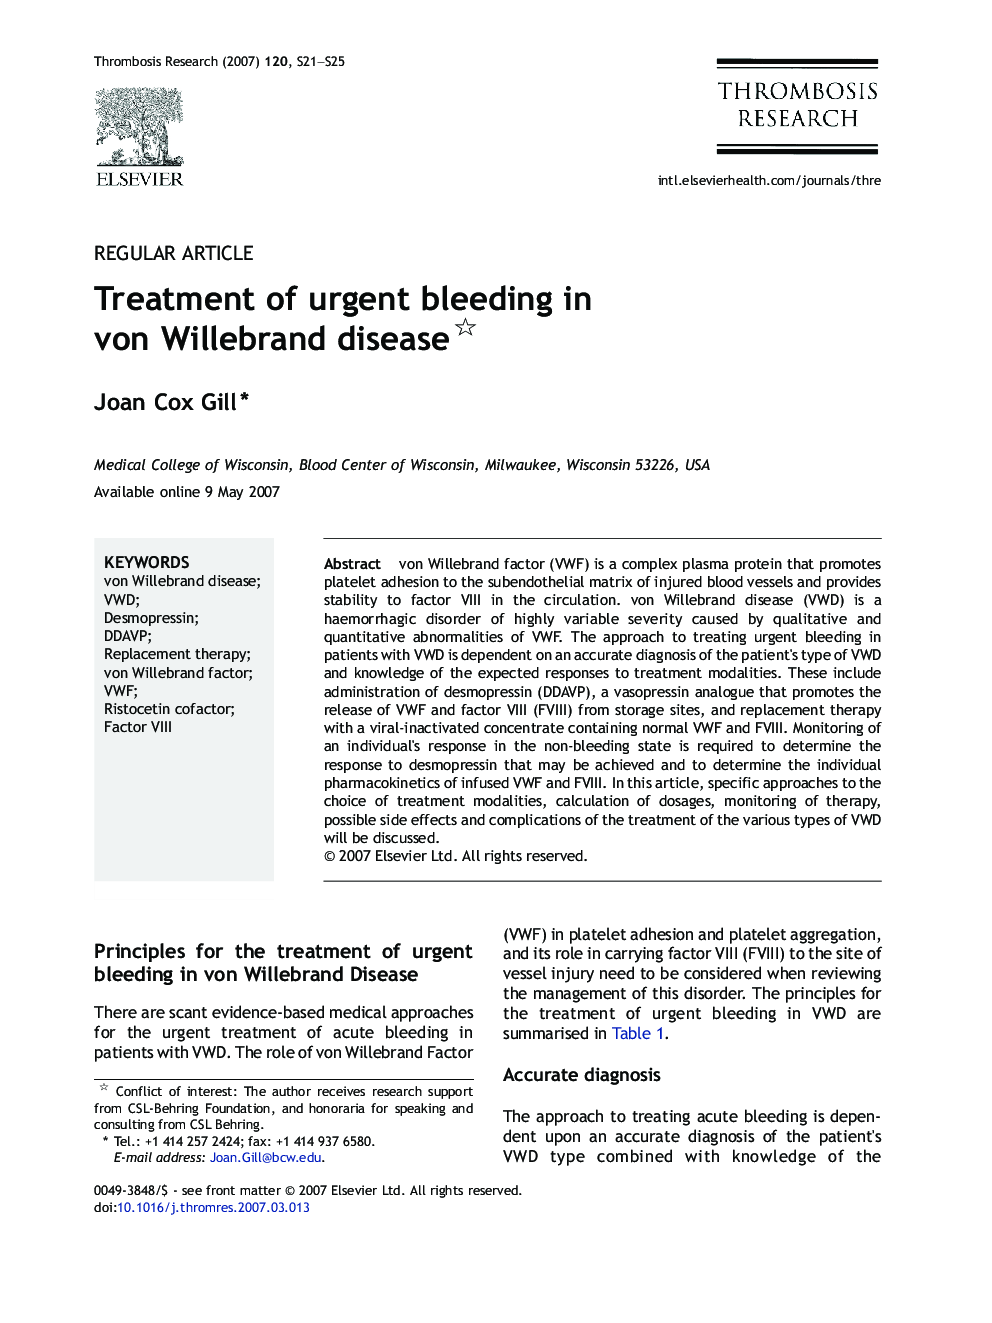 Treatment of urgent bleeding in von Willebrand disease 